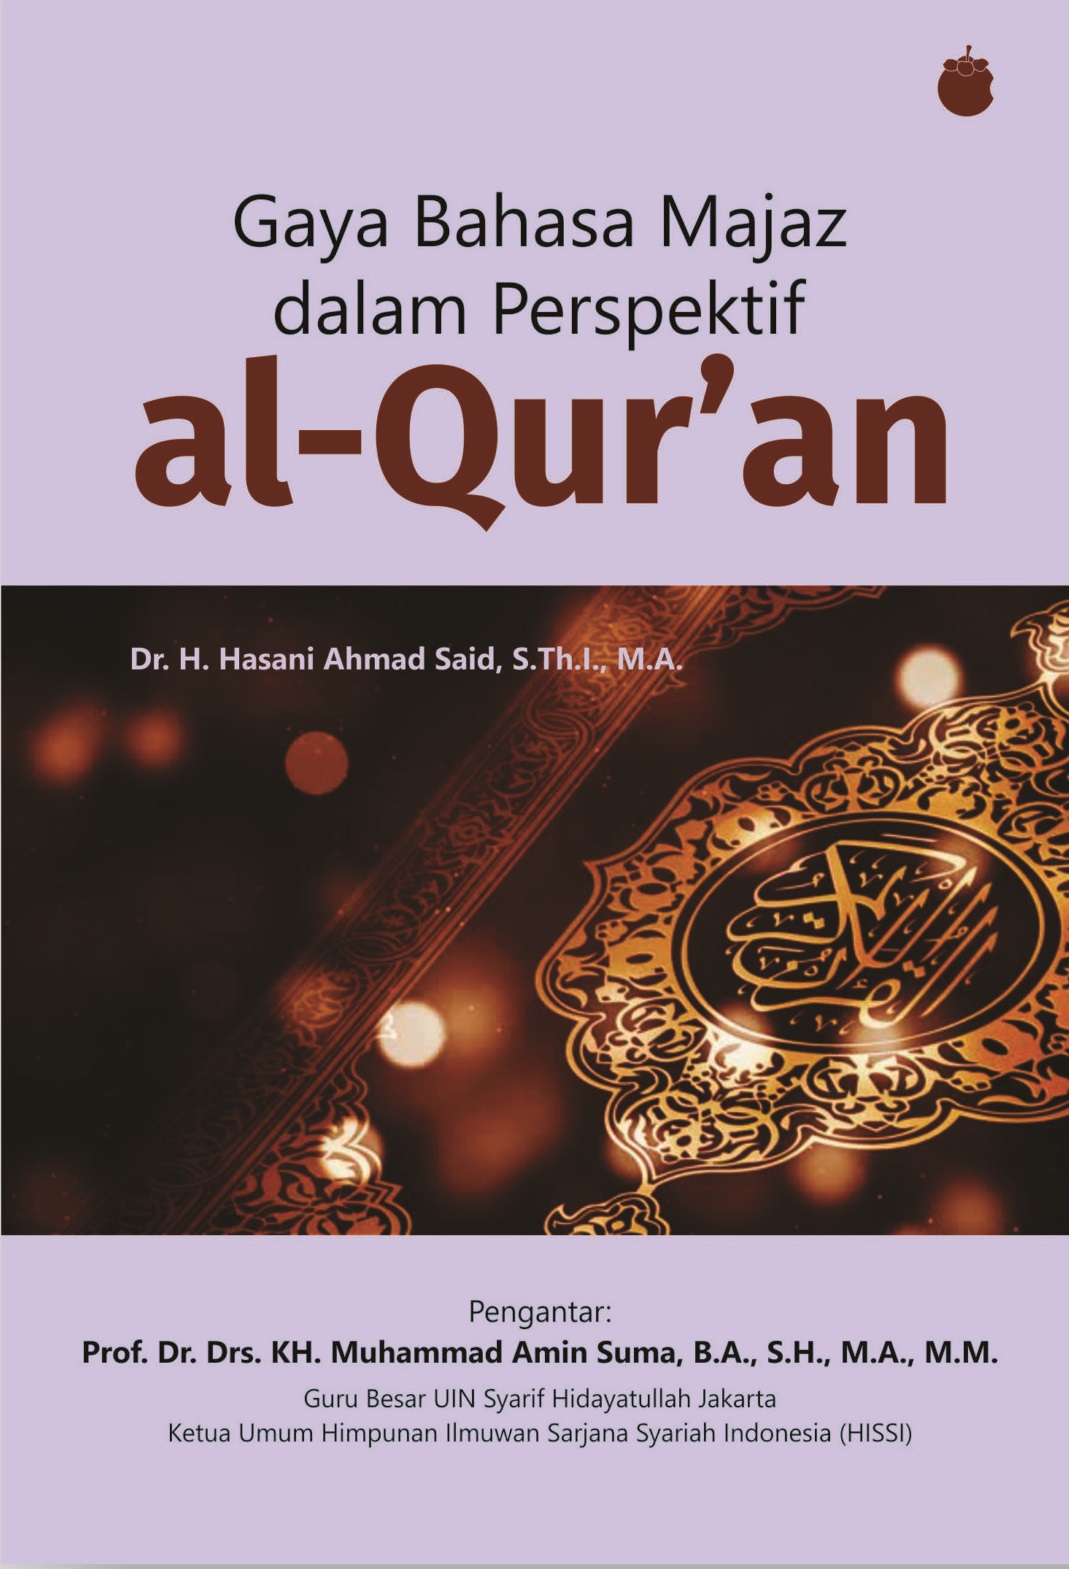 Gaya Bahasa Majaz dalam Perspektif al-Qur’an